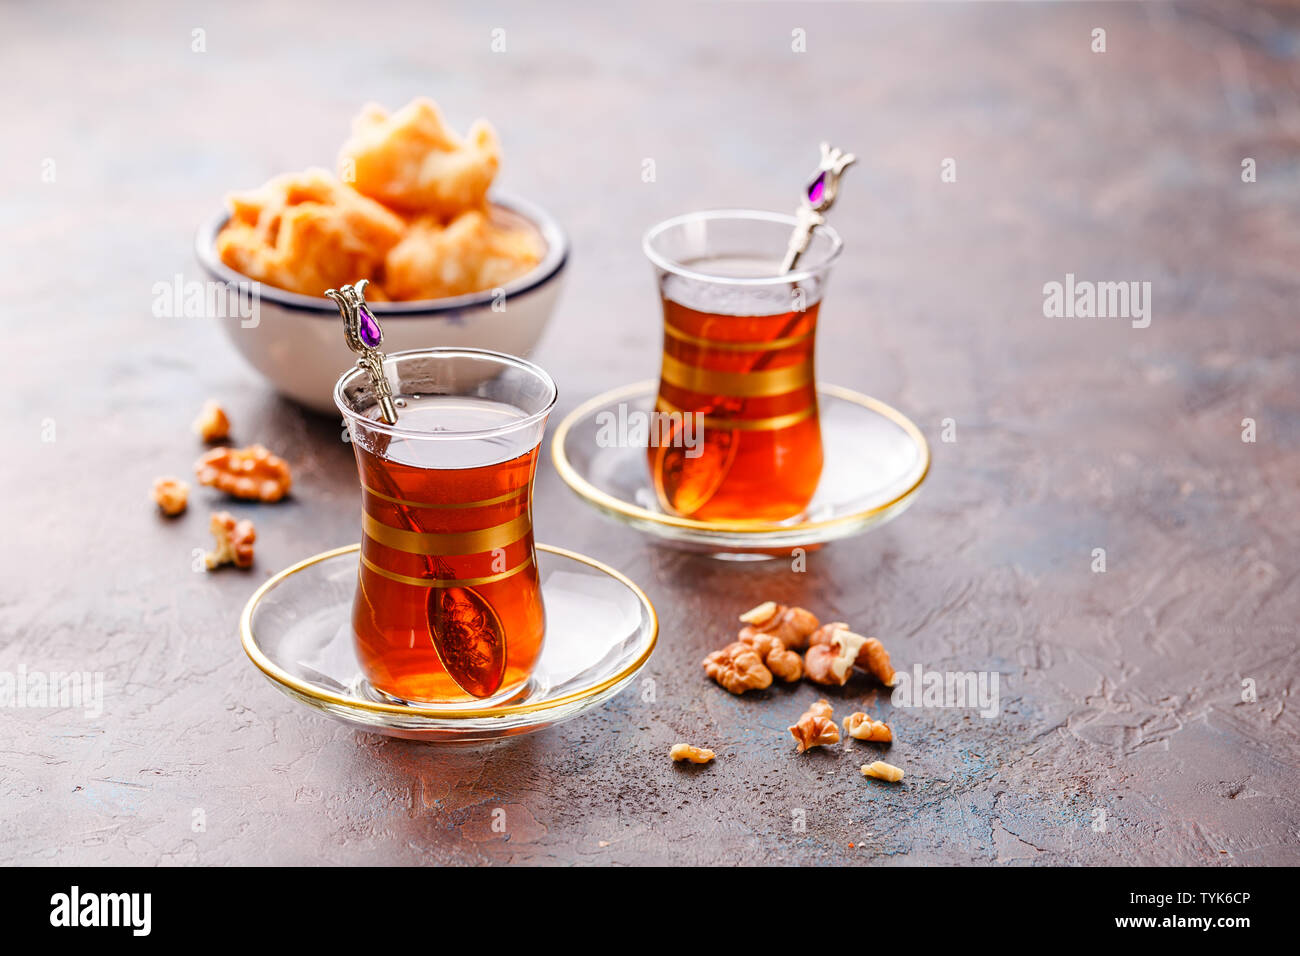 Im Nahen und Mittleren Osten oder arabischen Tee mit Minze in einem traditionellen Glas Schale und Turkish Delight Baklava. Ramadan Kareem. Eid Mubarak. Islamische Feiertage decoratio Stockfoto